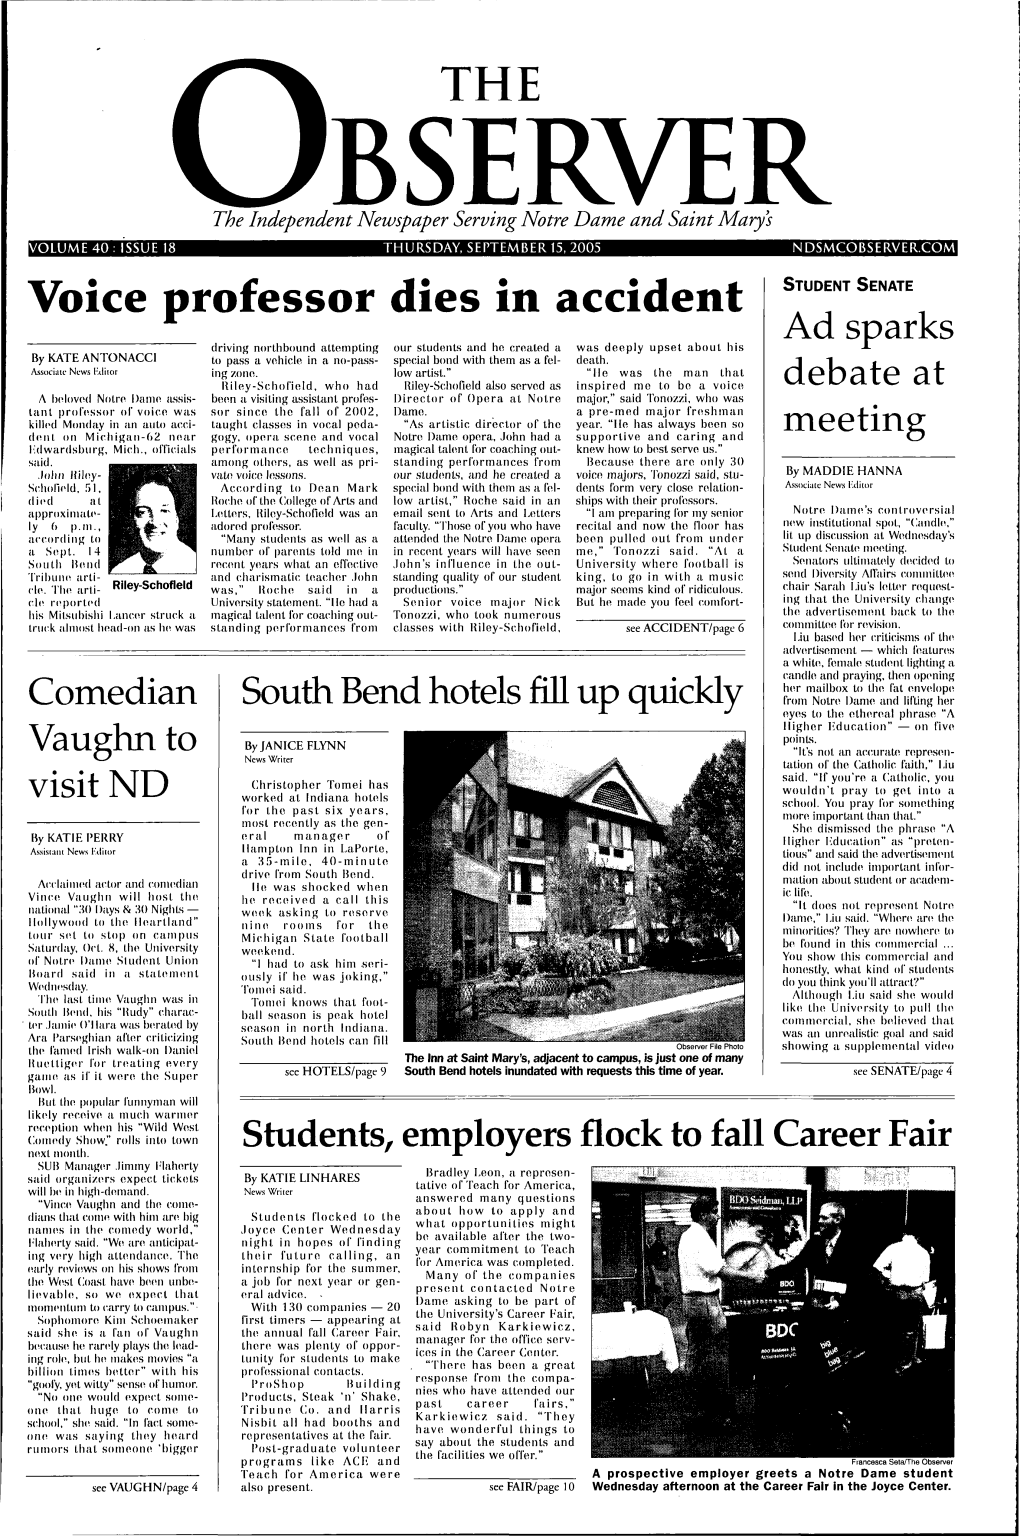 Voice Professor Dies in Accident STUDENT SENATE